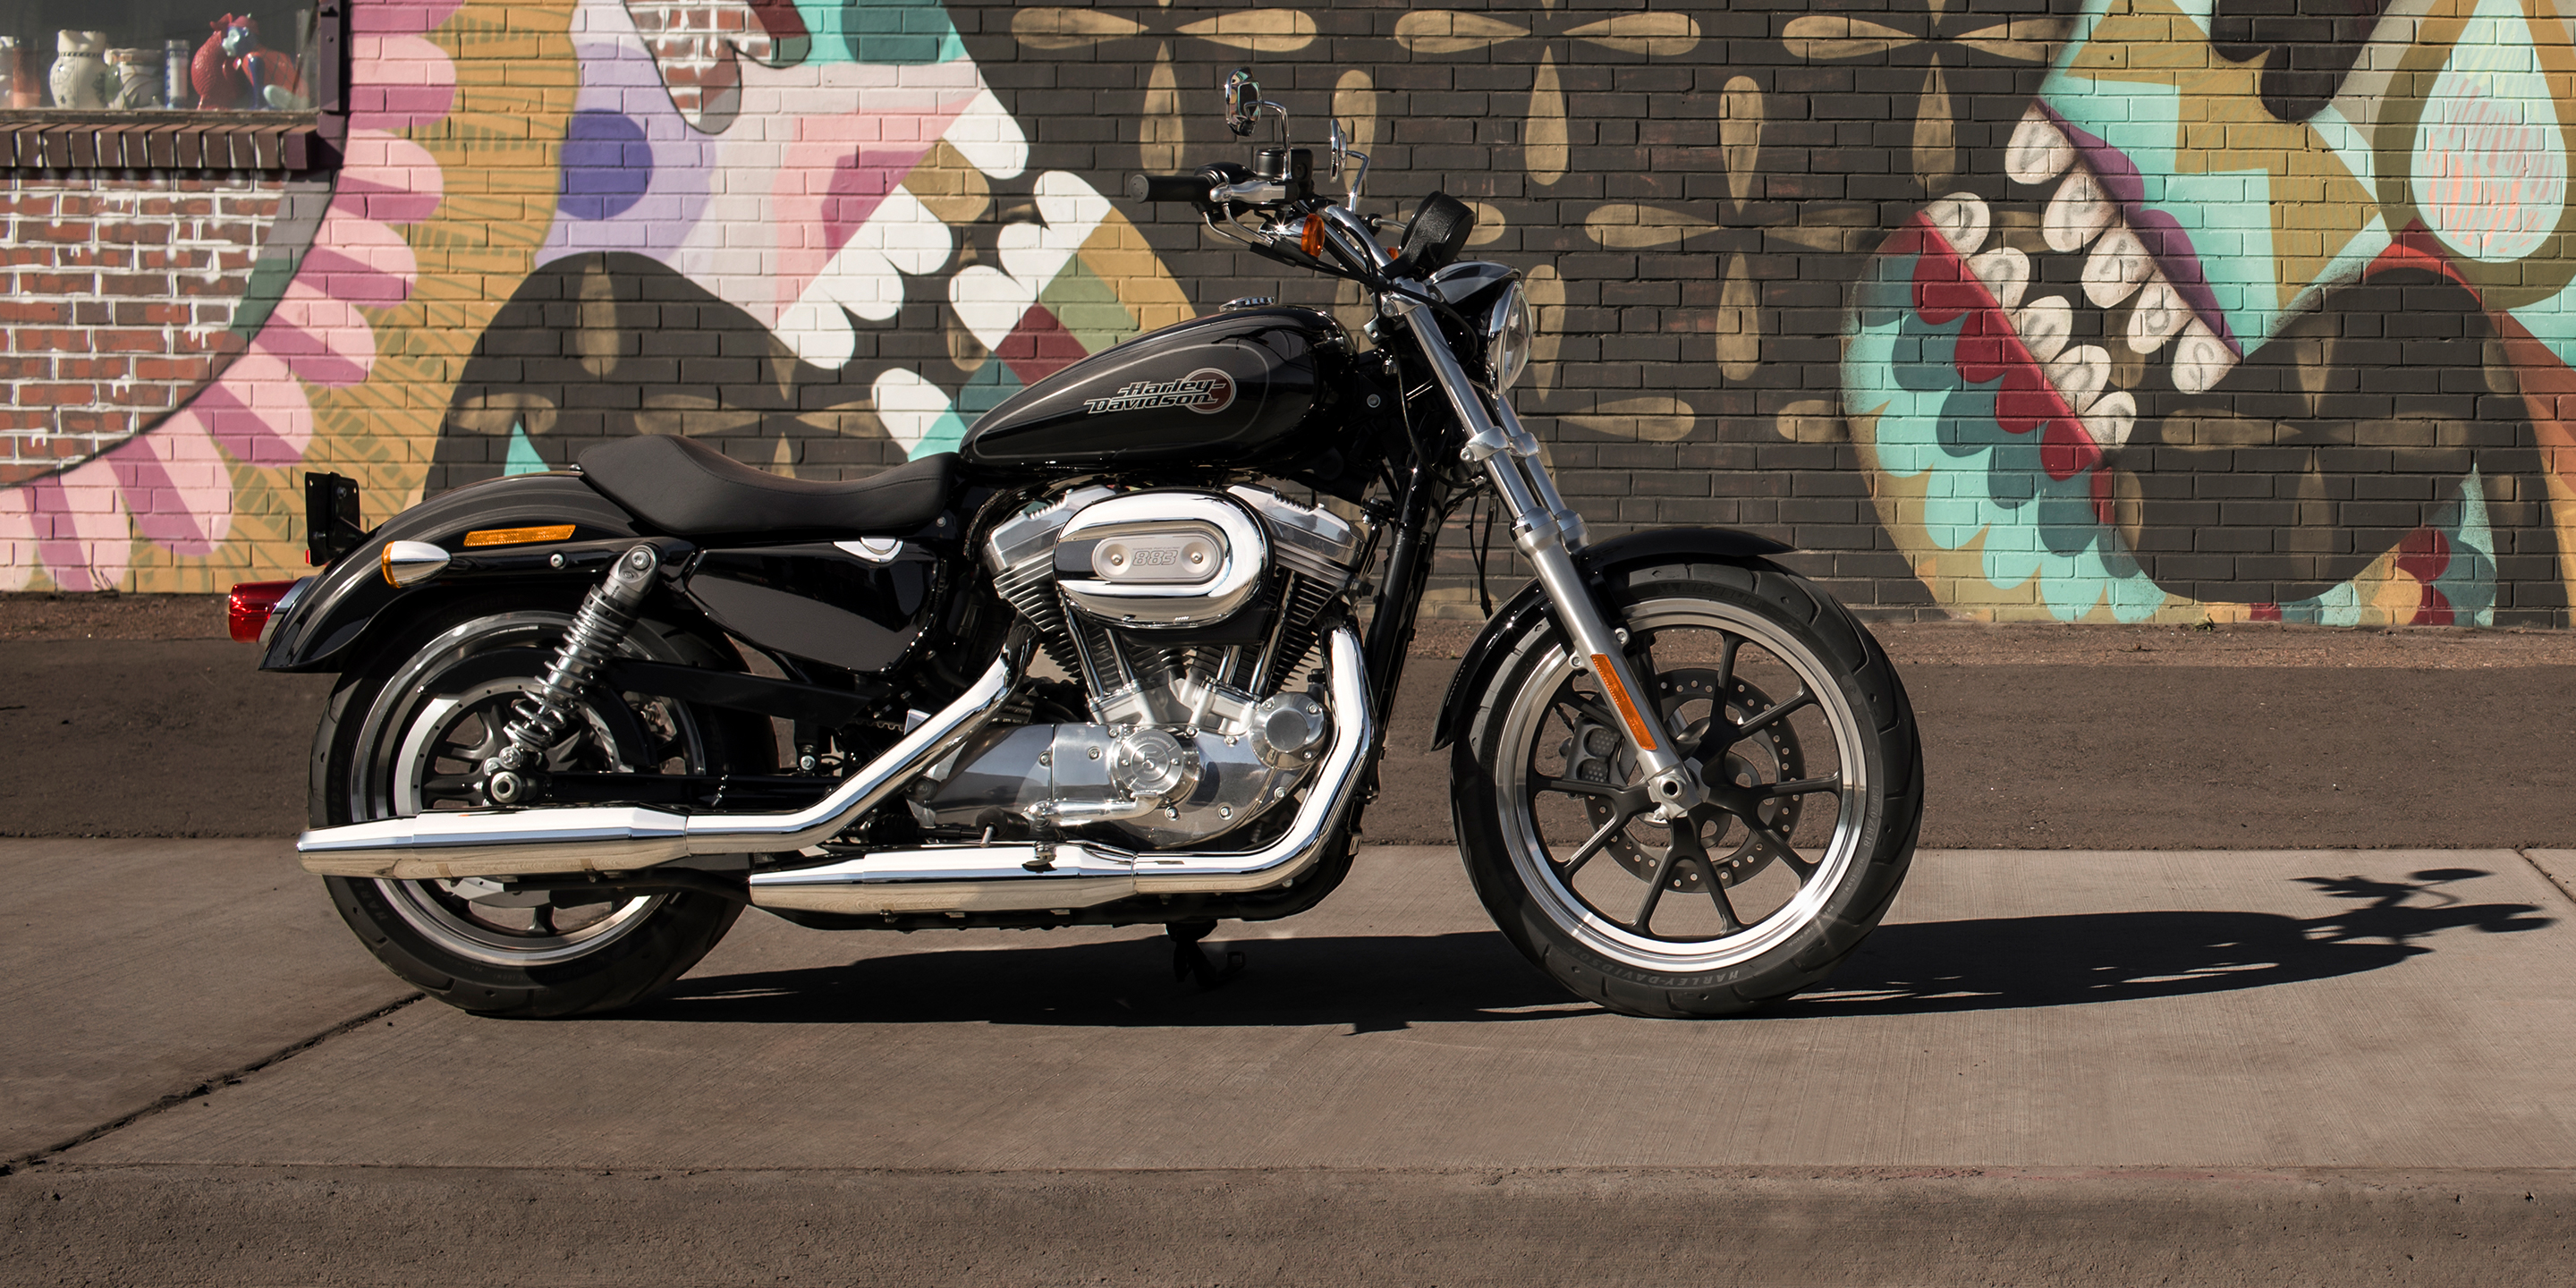   SuperLow Motorcycle  2019  Harley  Davidson  